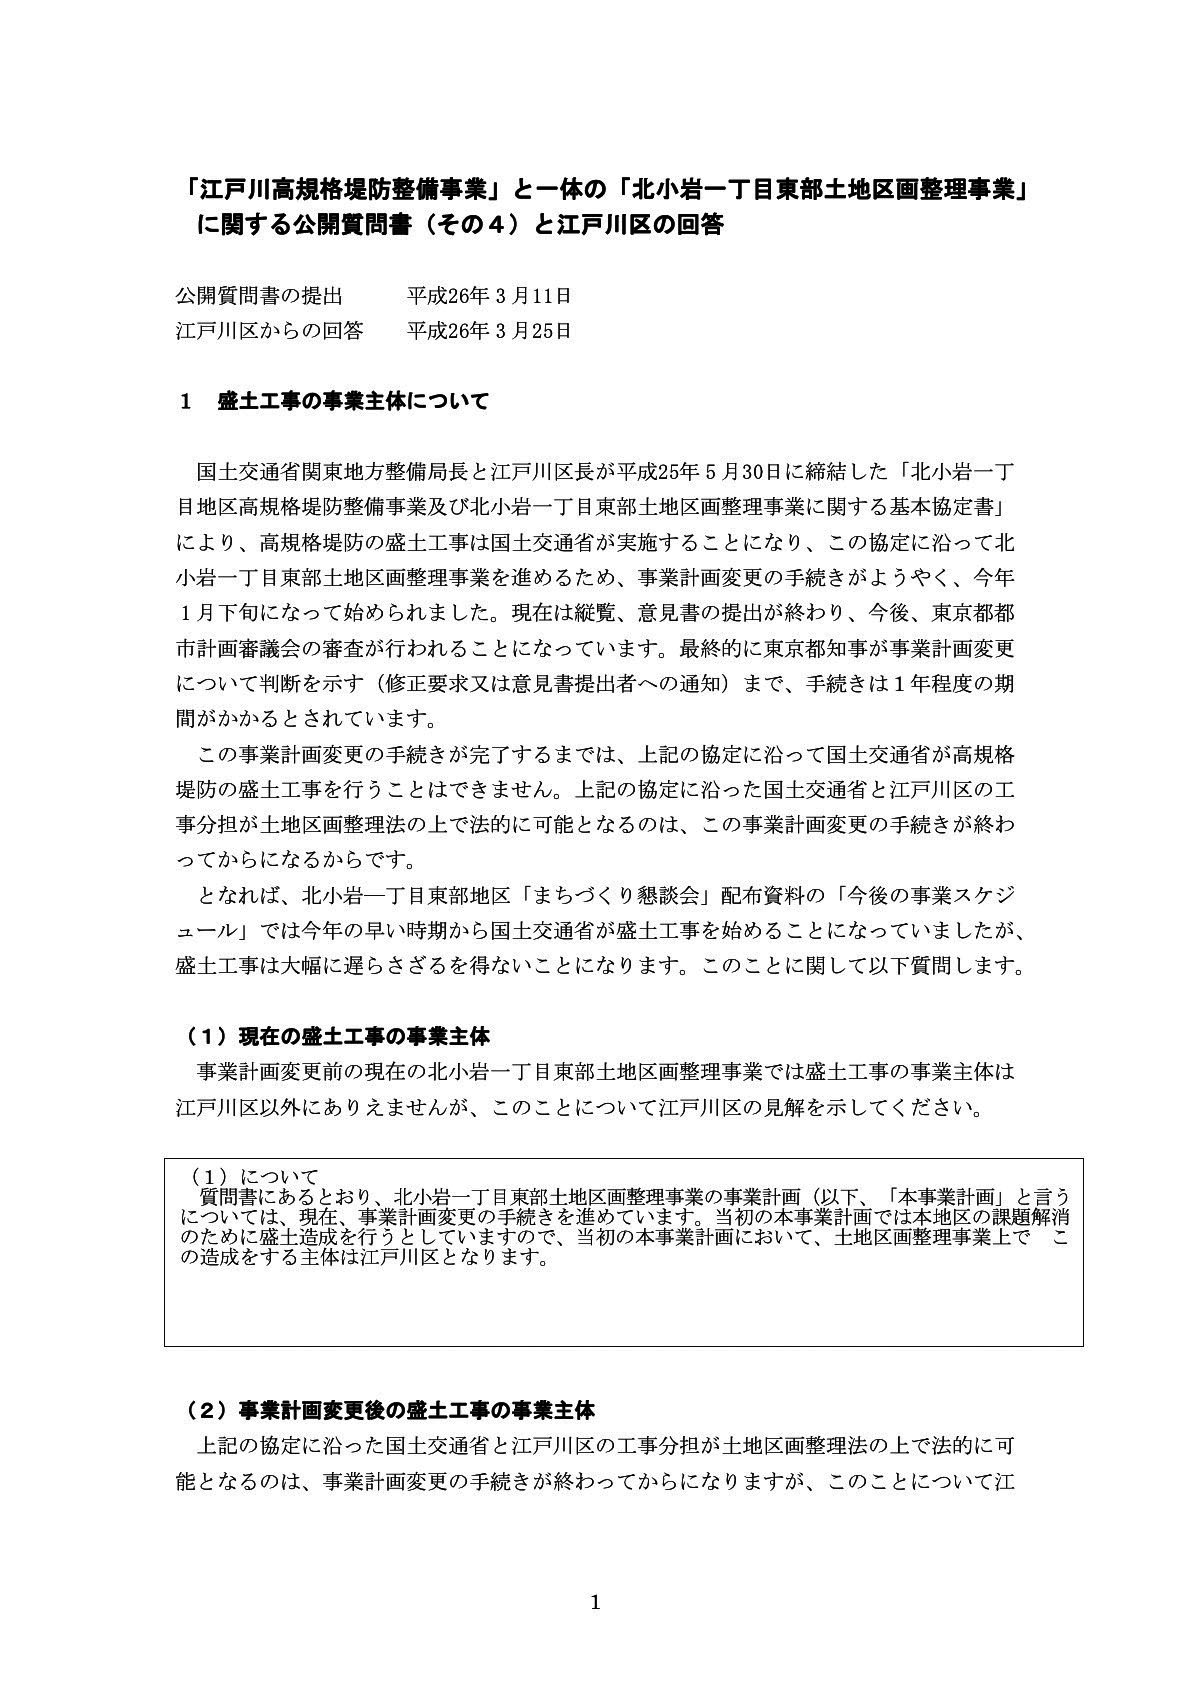 スーパー堤防に関する公開質問状　その4（江戸川区宛）とその回答書（2014年3月25日）